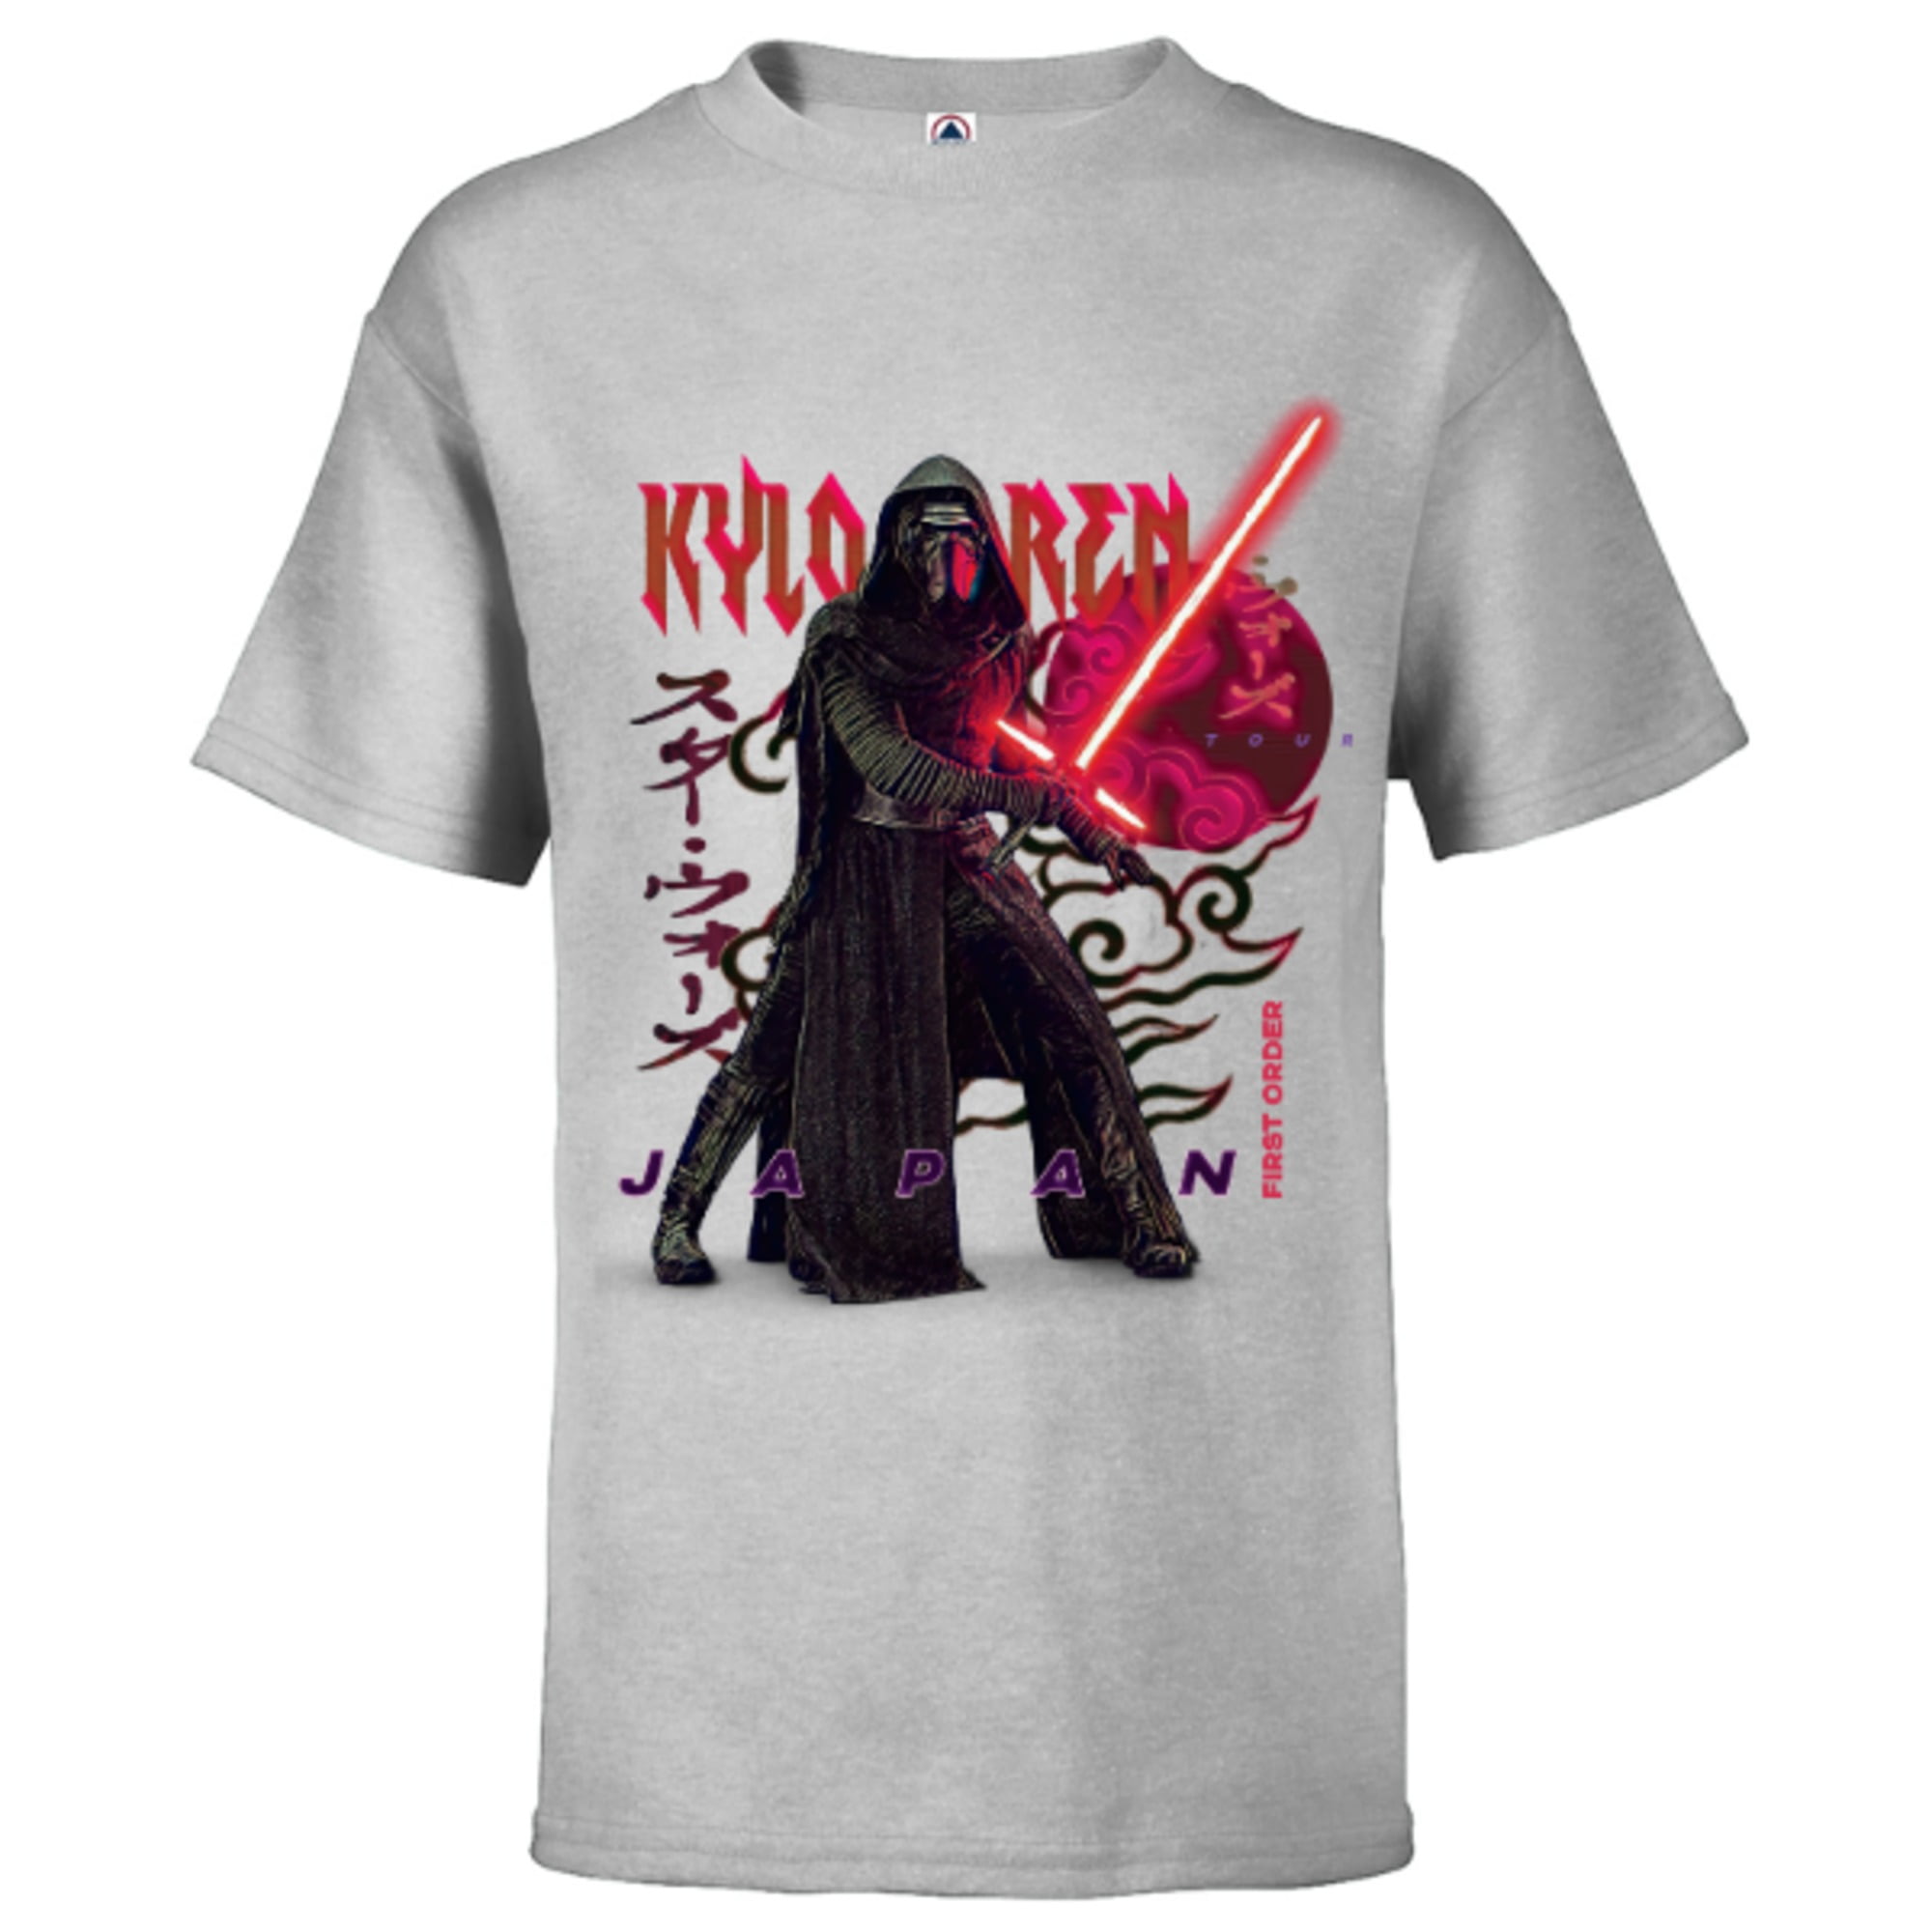 Star Wars Kylo Ren Japanese - Short Sleeve T-Shirt for Kids -  Customized-White